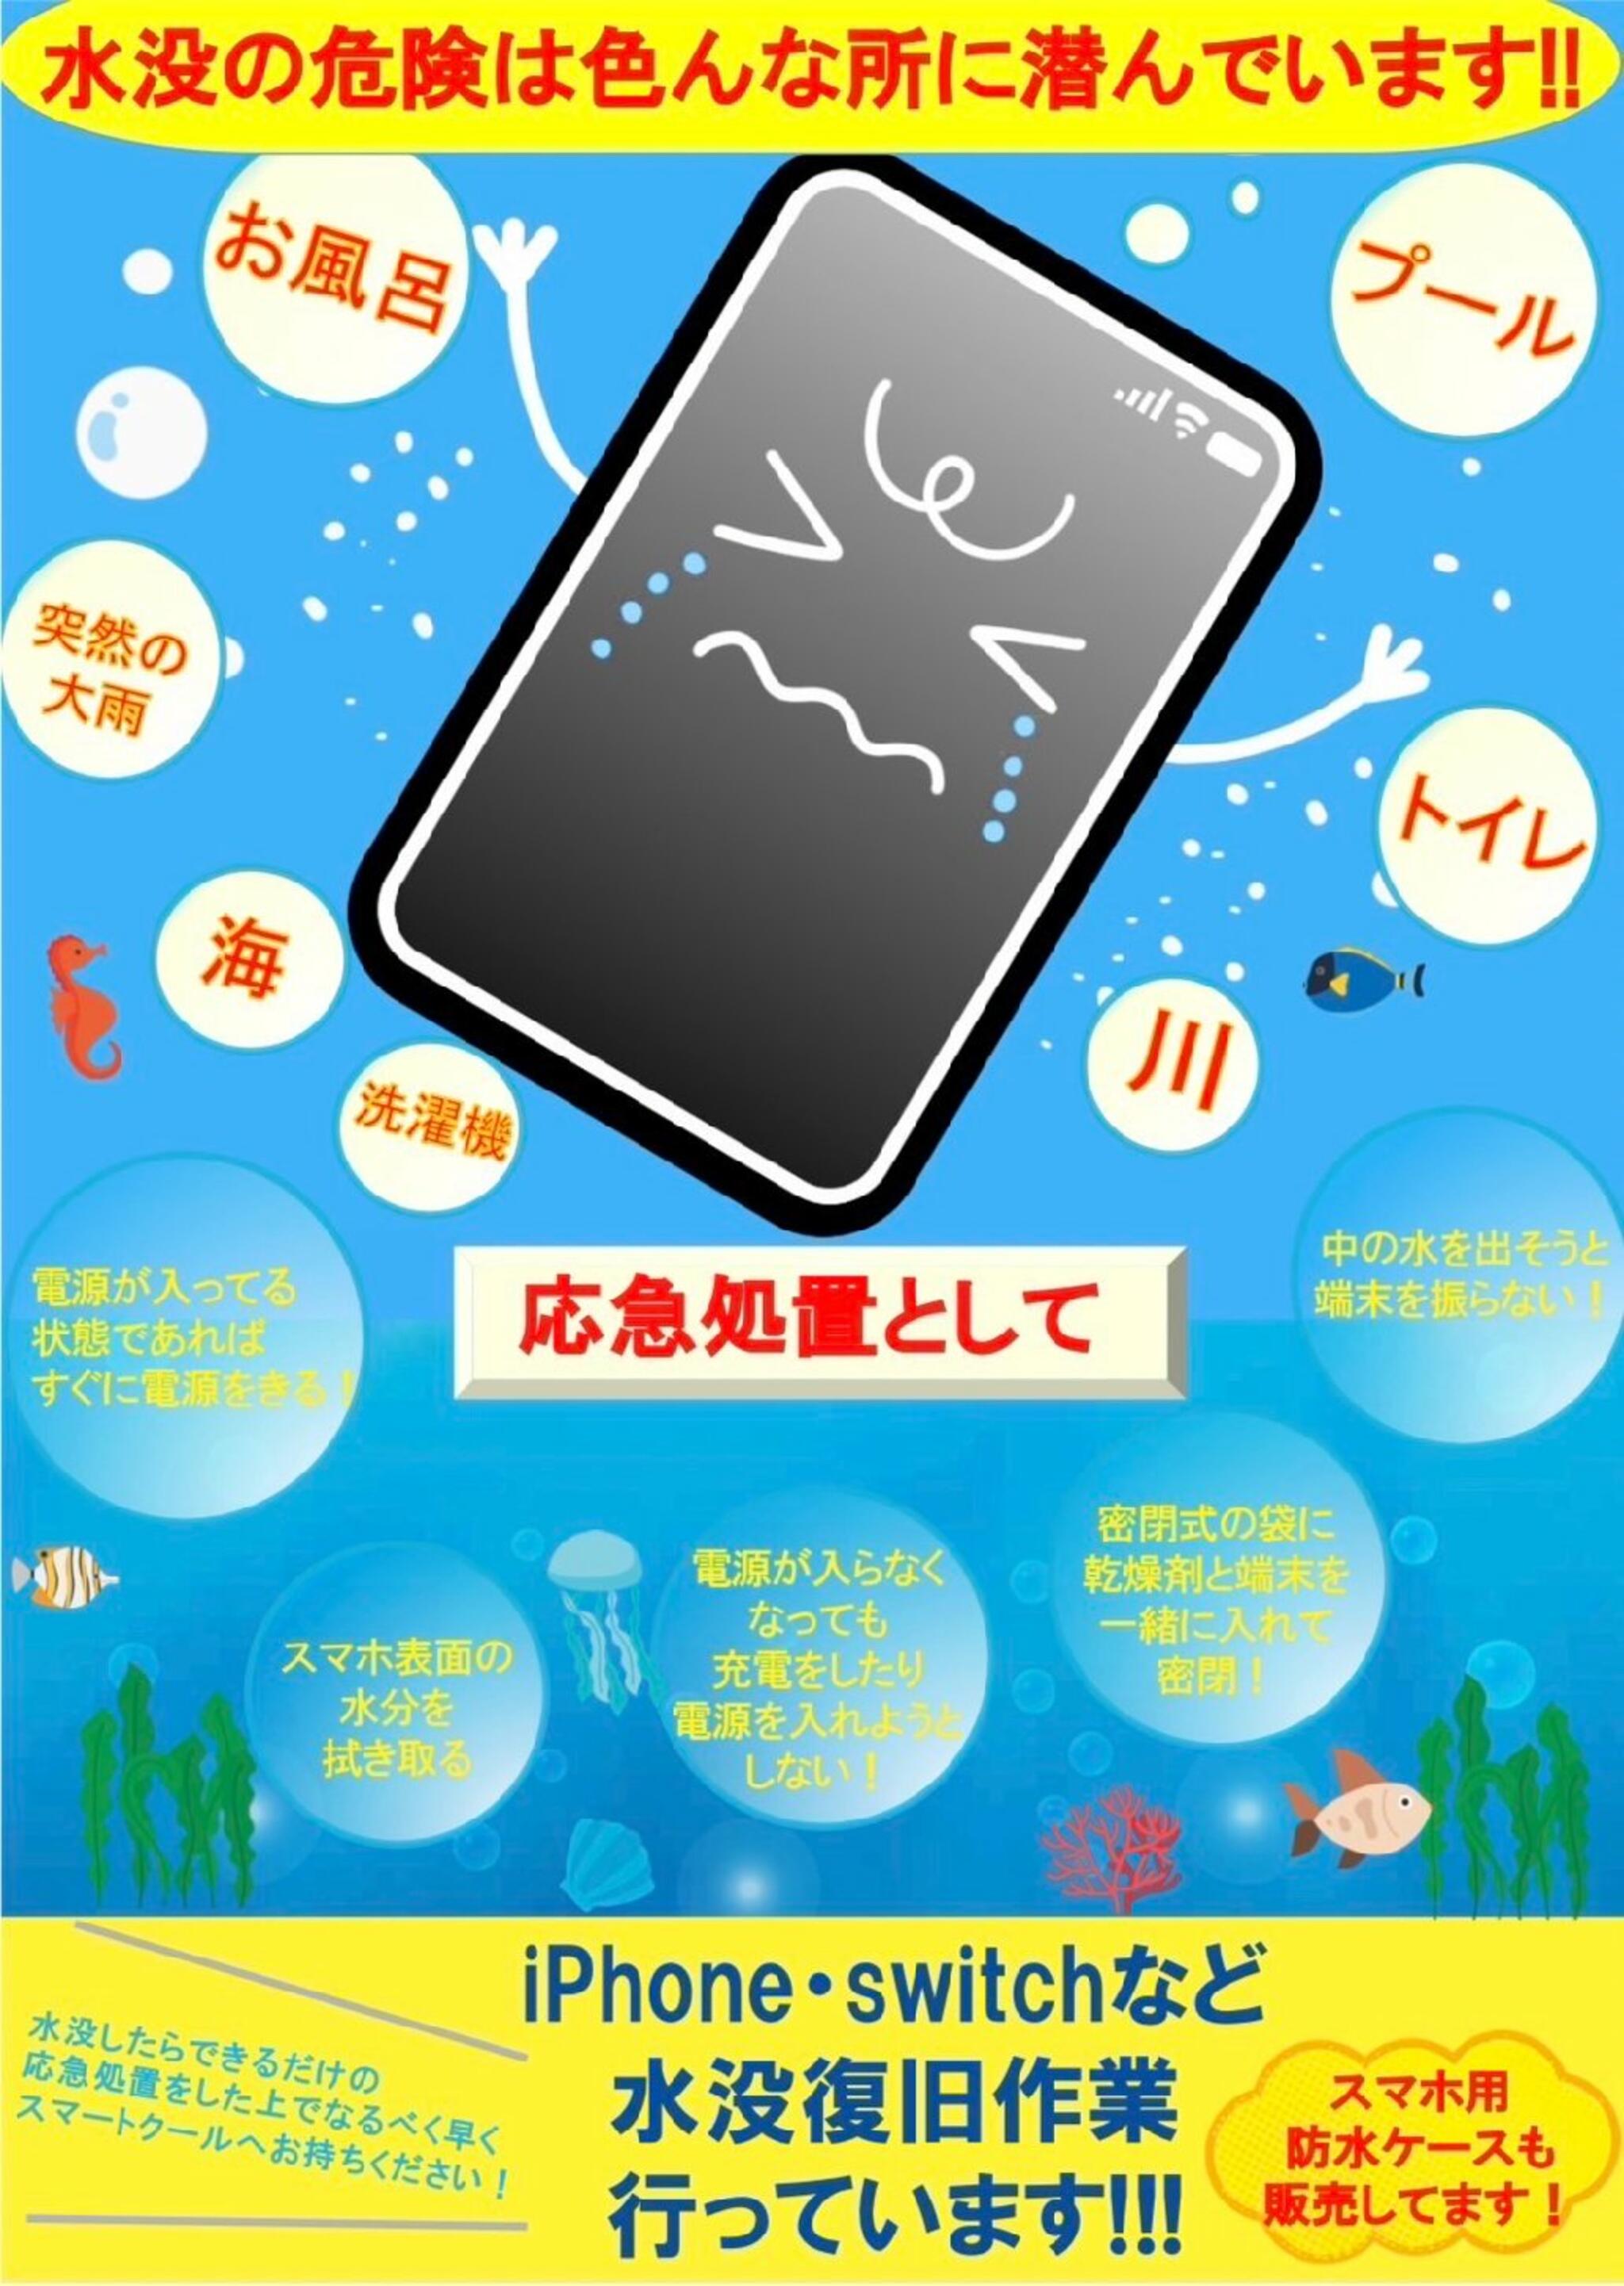 iPhone・iPad・Switch修理店 スマートクール イオンモール広島祇園店からのお知らせ( 突然 のゲリラ豪雨でスマホが濡れないようにご注意ください！！ )に関する写真